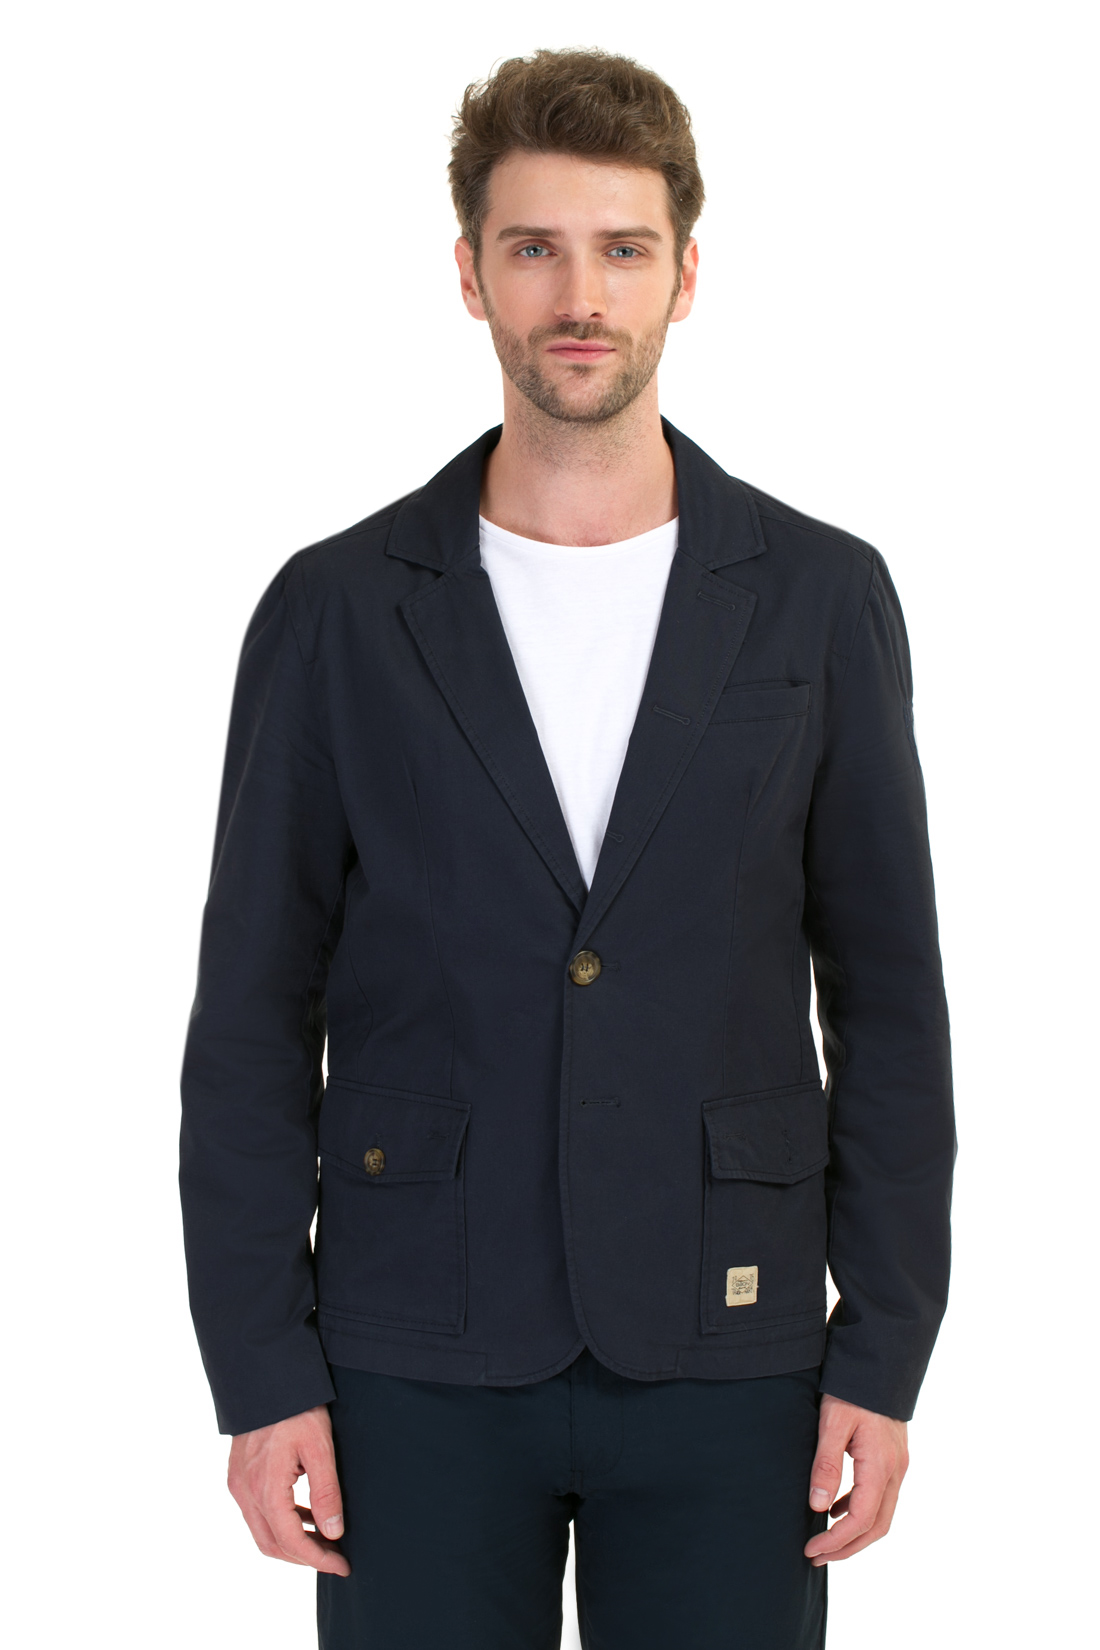 Повседневный пиджак (арт. baon B627004), размер M, цвет синий Повседневный пиджак (арт. baon B627004) - фото 1